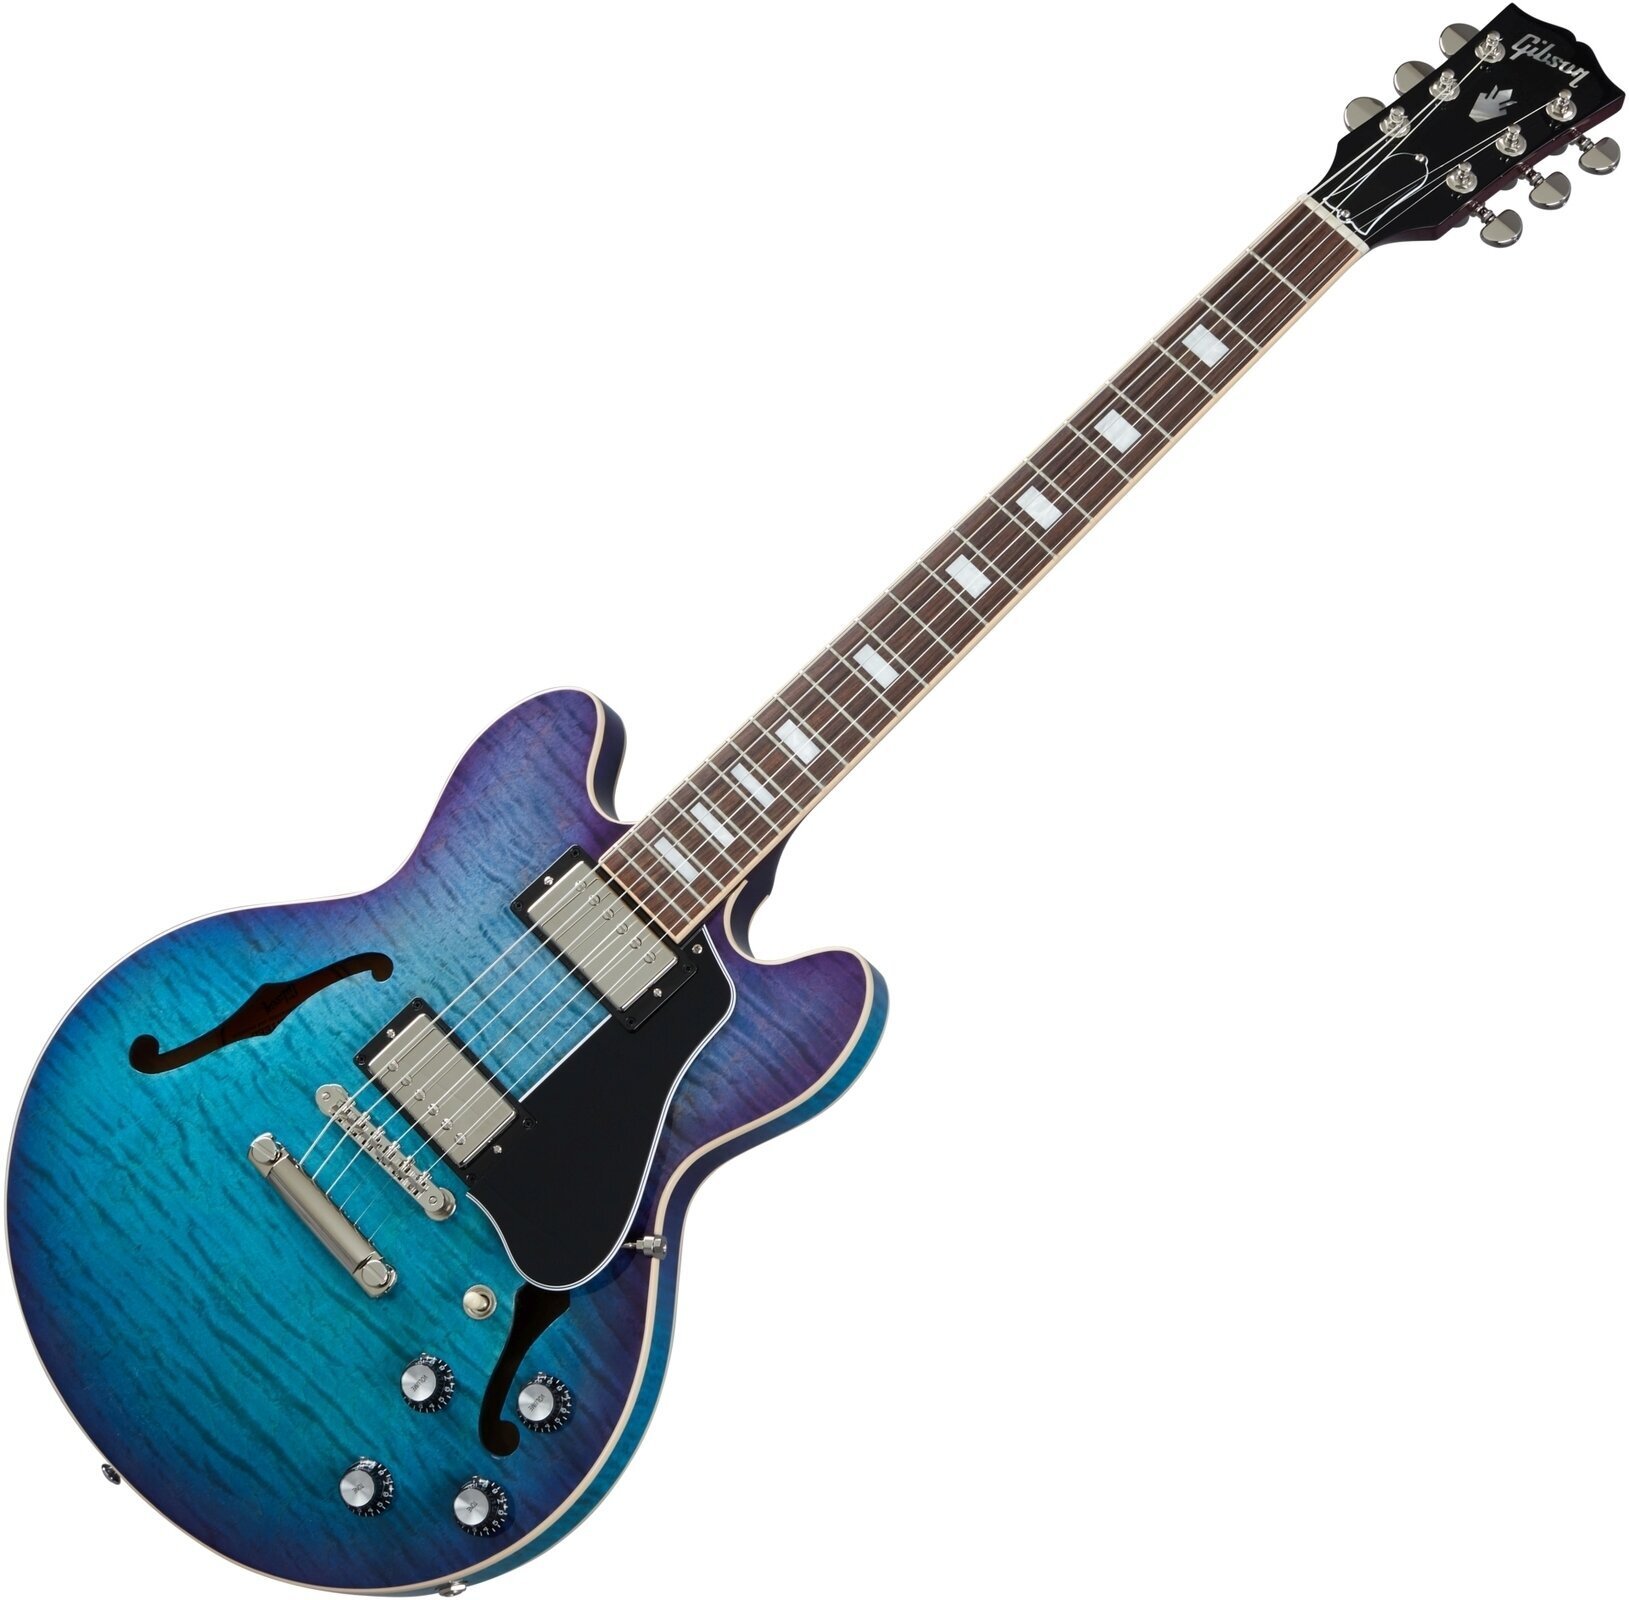 Gibson ES-339 Figured Blueberry Burst Gibson